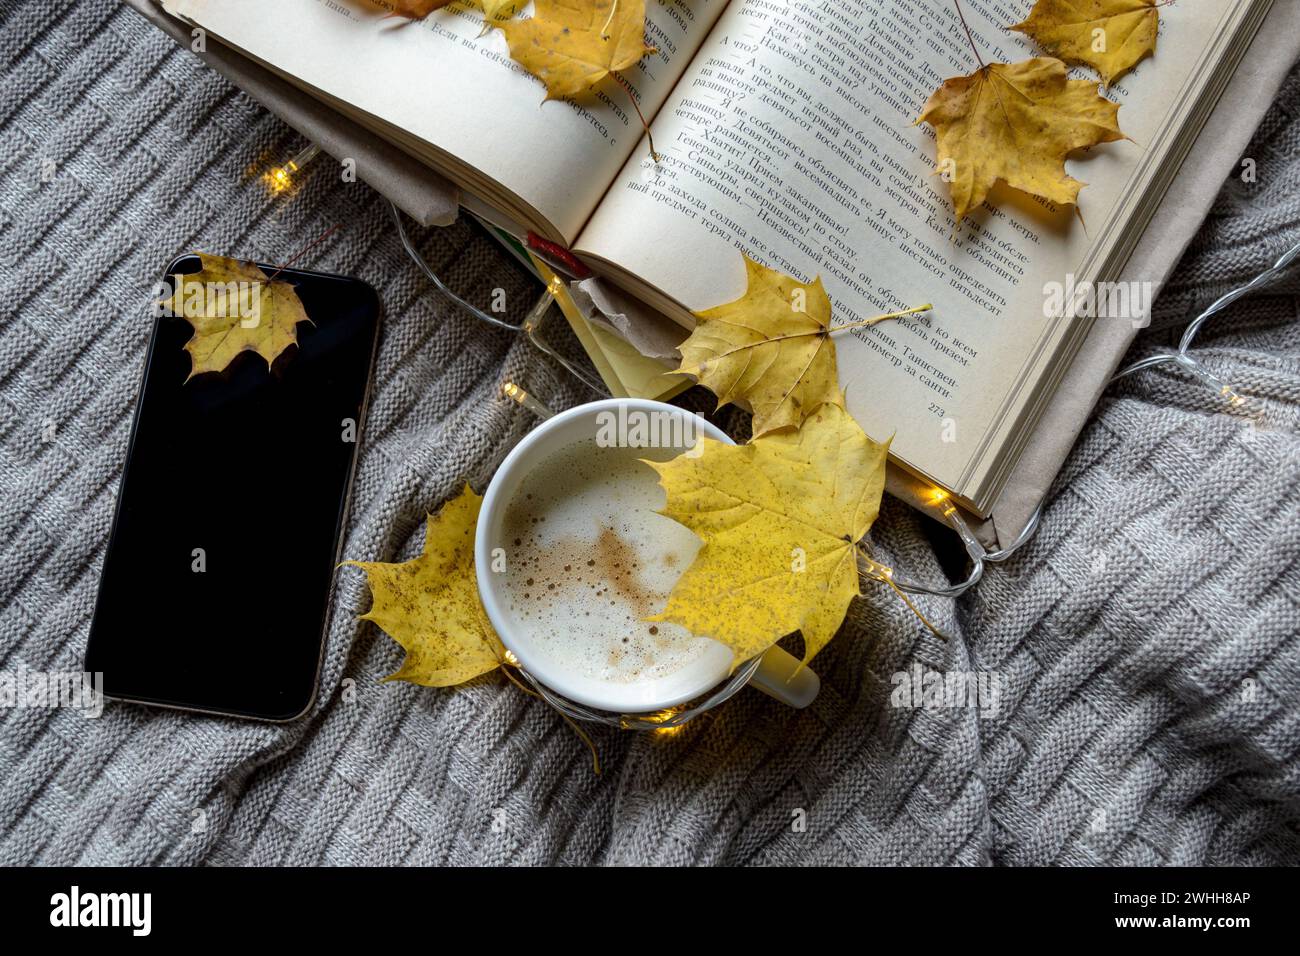 Un livre, une tasse de café et un téléphone parsemé de feuilles d'érable jaunes Banque D'Images